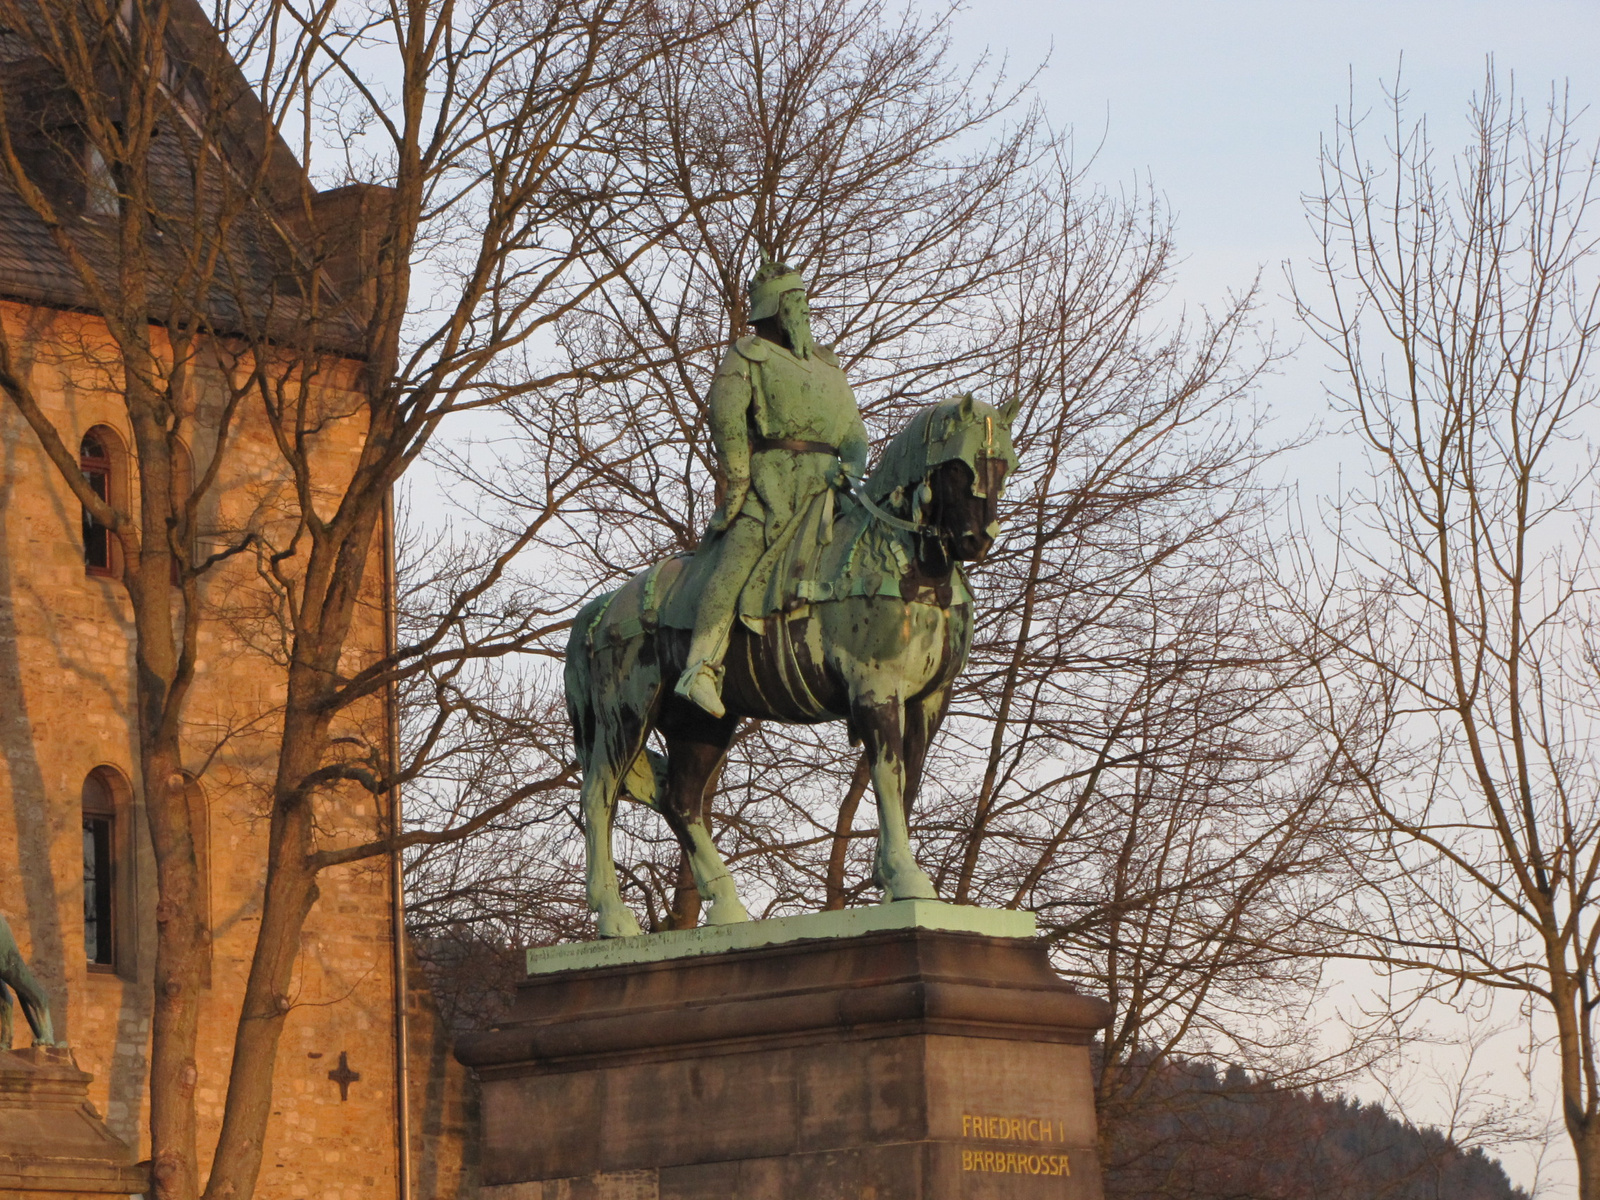 Goslar, a Kaiserpfalz, SzG3